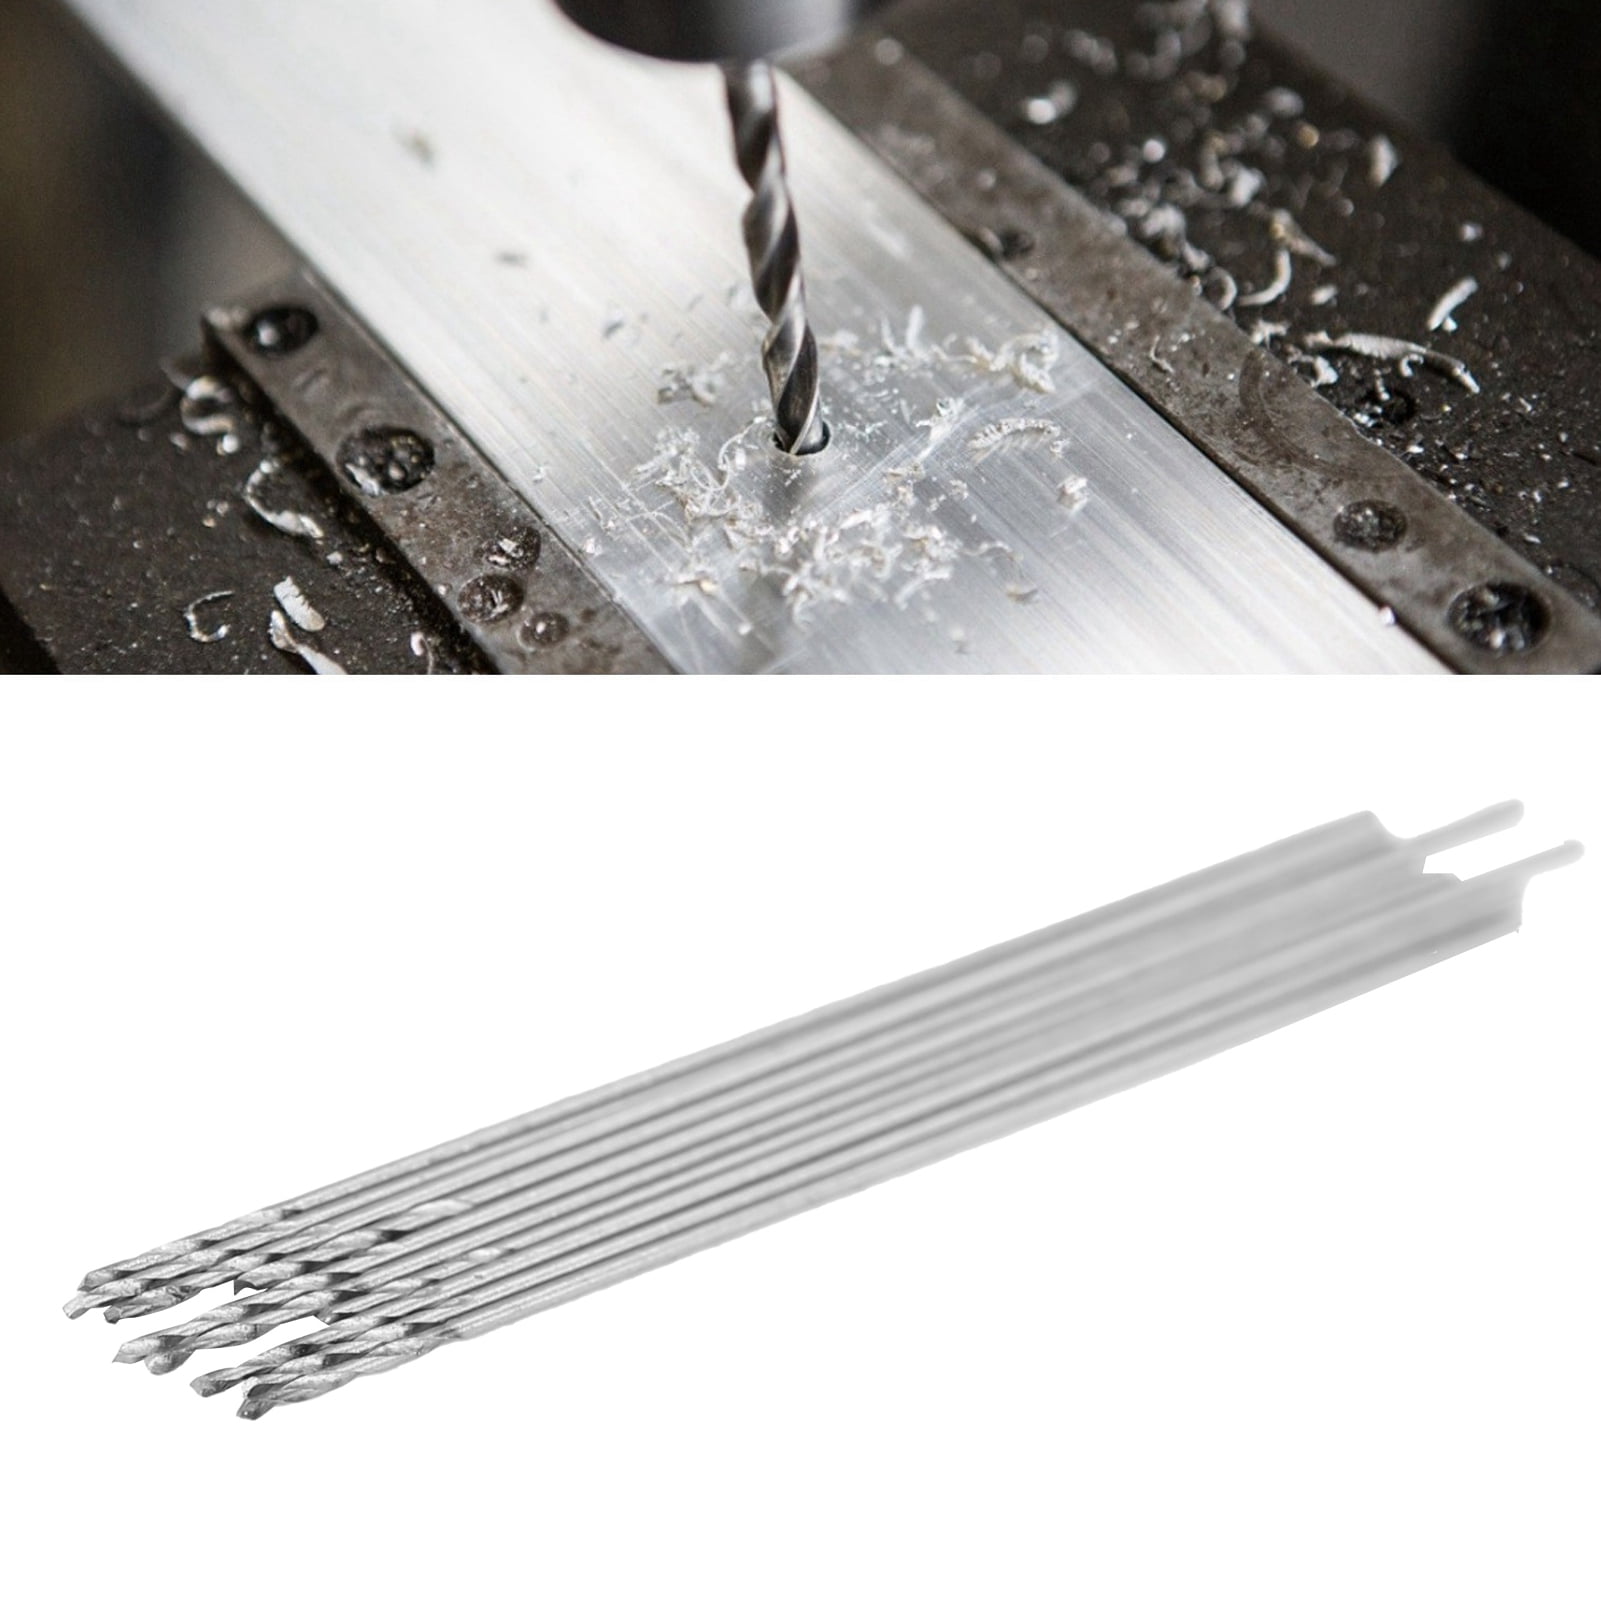 10x Micro HSS Straight Shank Twist Drill Bit Electrical Drilling Tool 0.3-3.0mm 